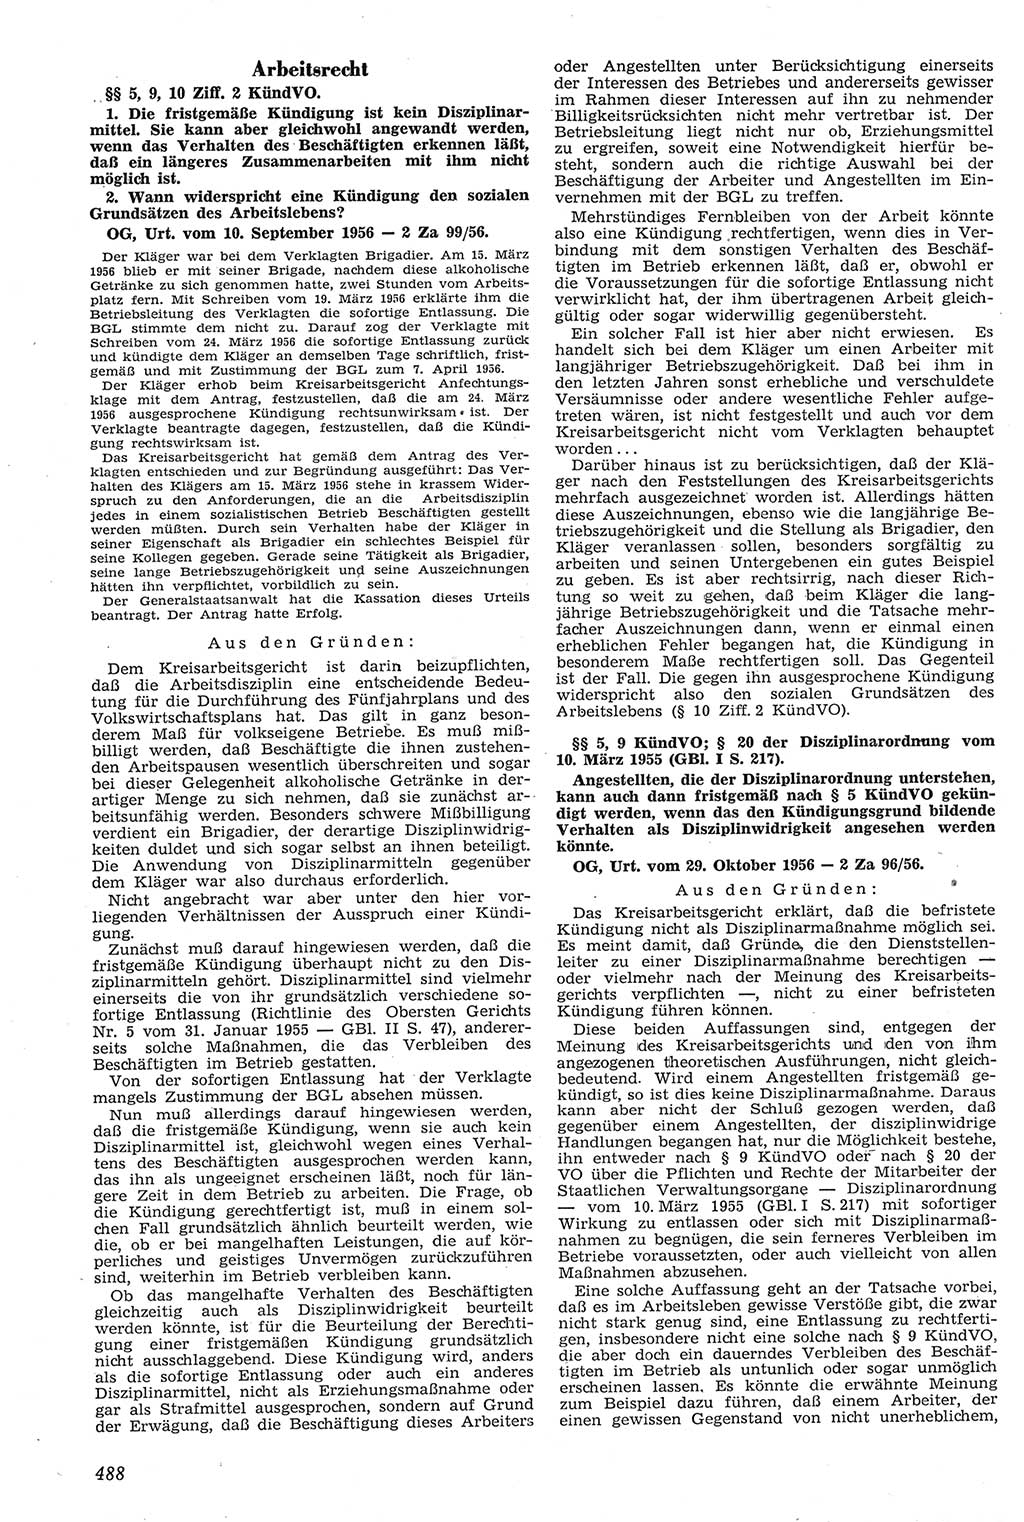 Neue Justiz (NJ), Zeitschrift für Recht und Rechtswissenschaft [Deutsche Demokratische Republik (DDR)], 11. Jahrgang 1957, Seite 488 (NJ DDR 1957, S. 488)